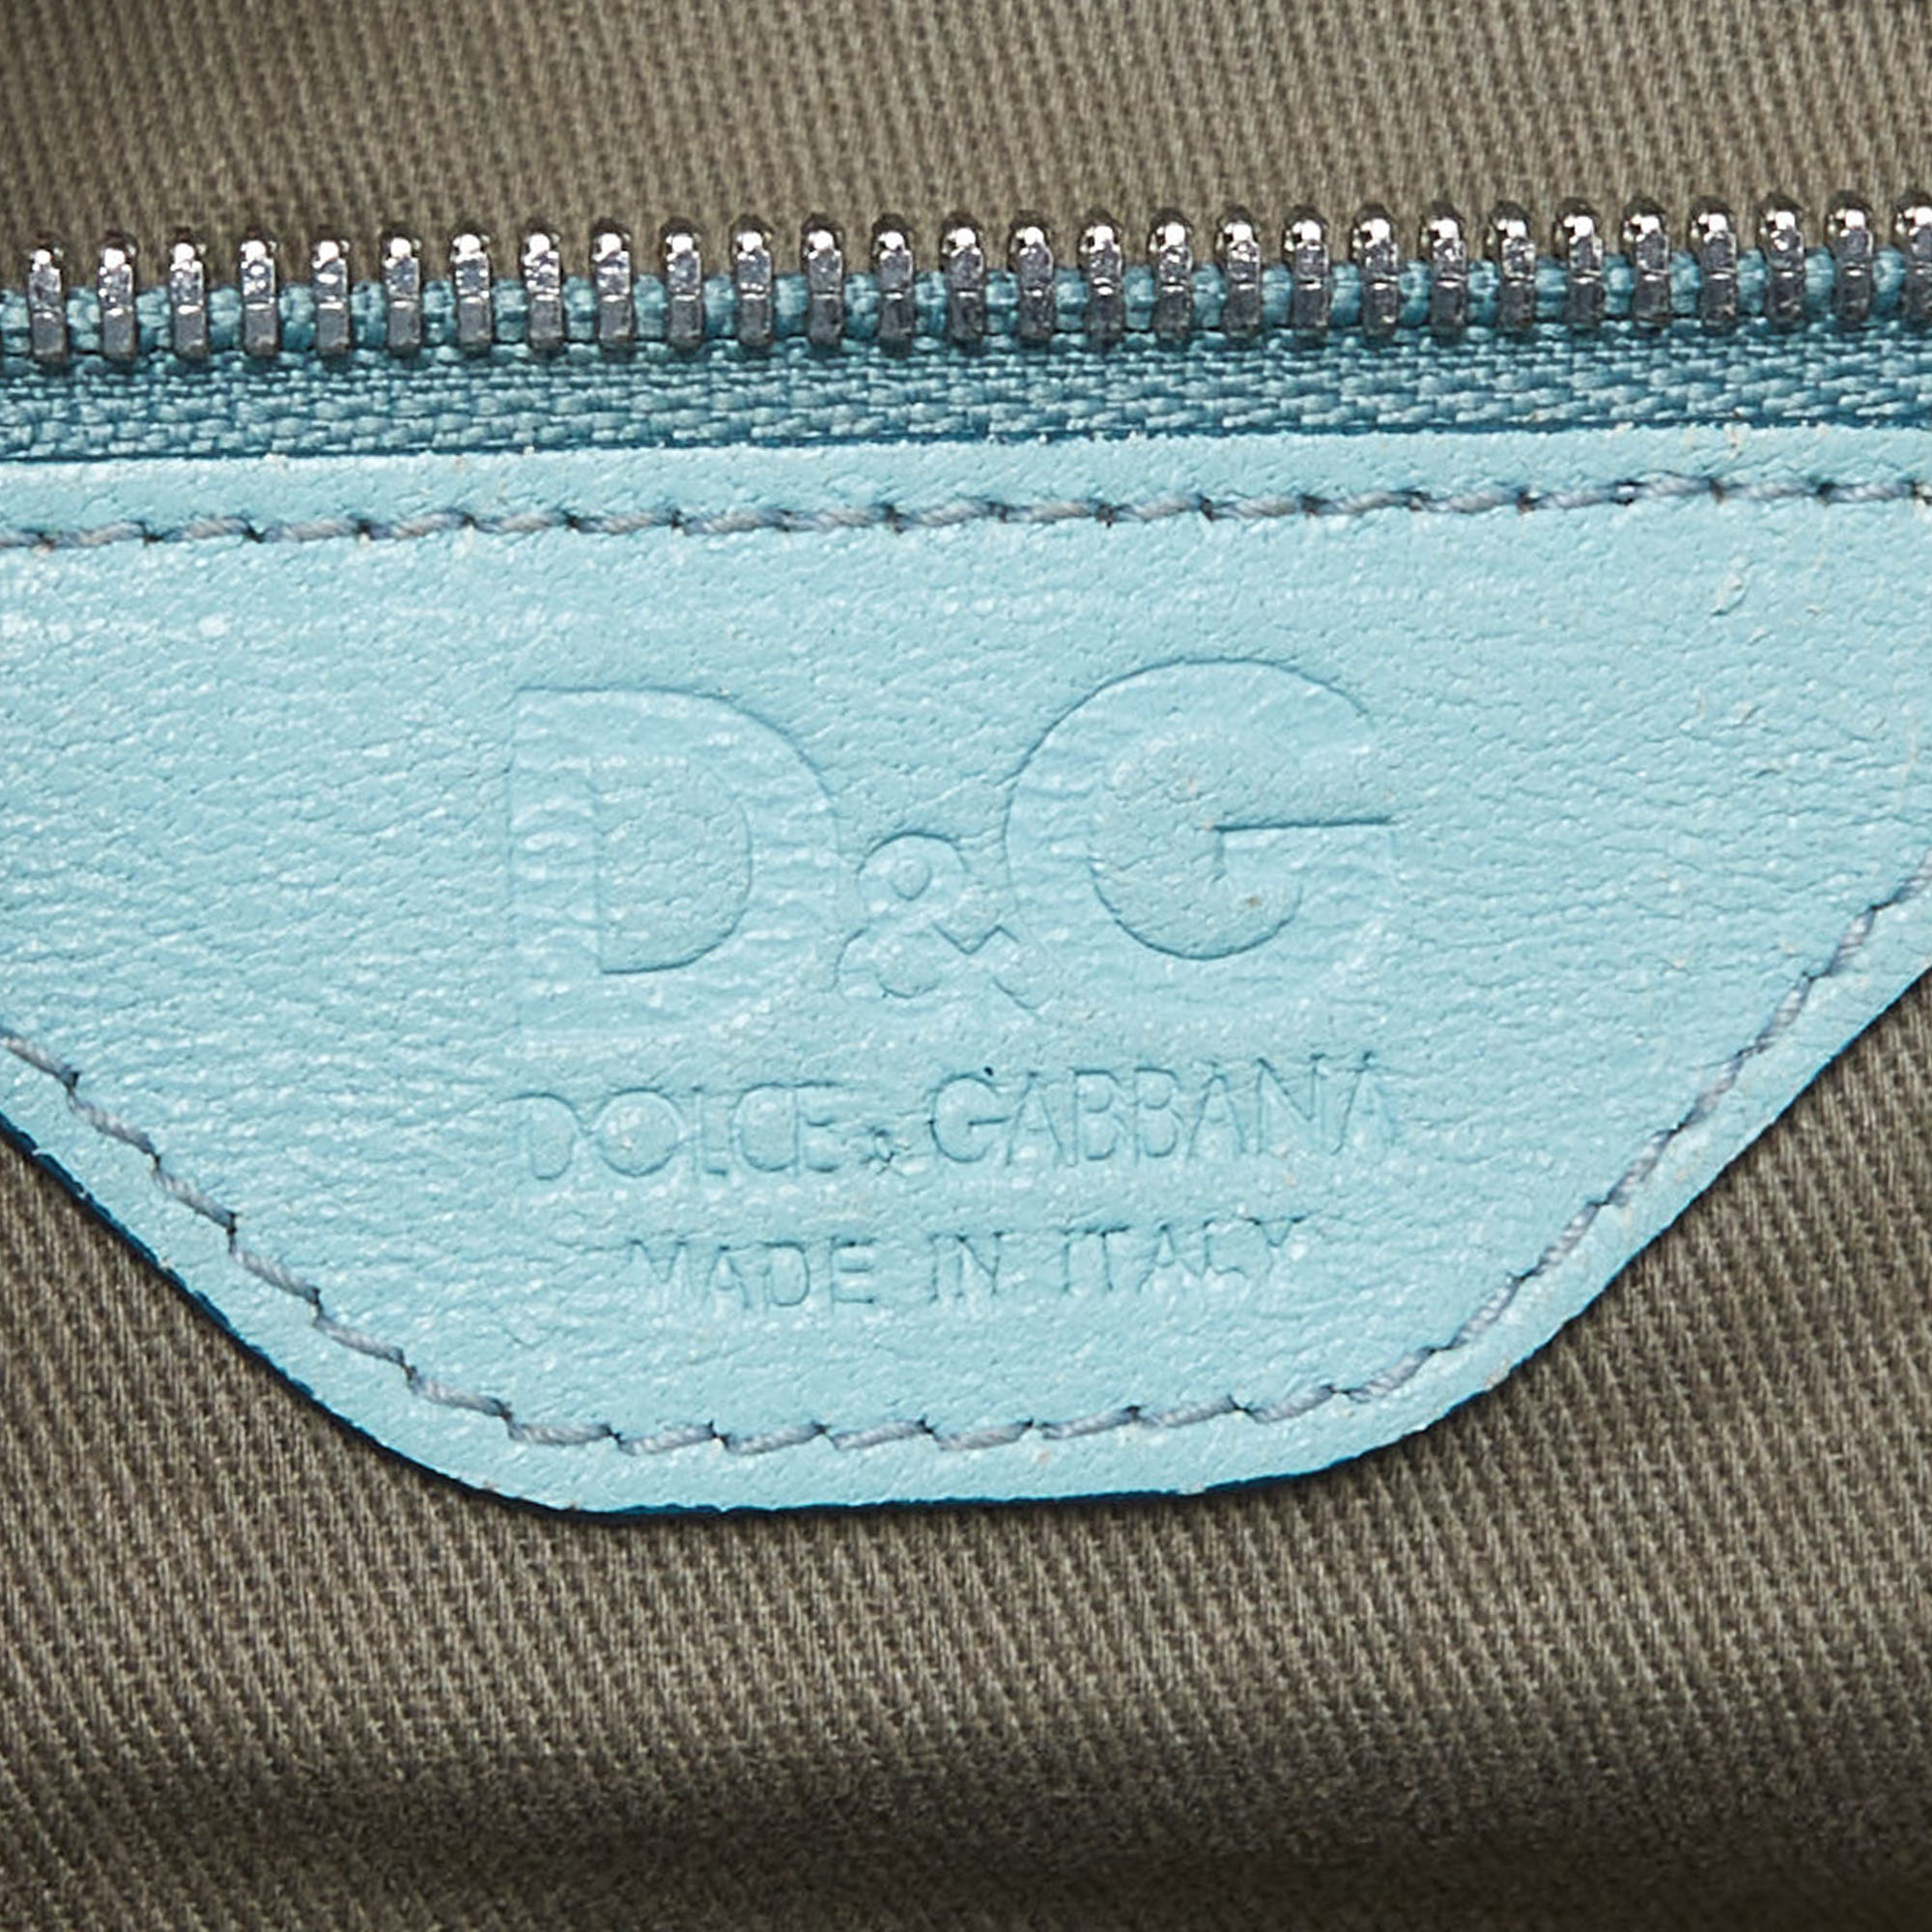 D&G Tri Color Leather Lily Twist Laptop Bag